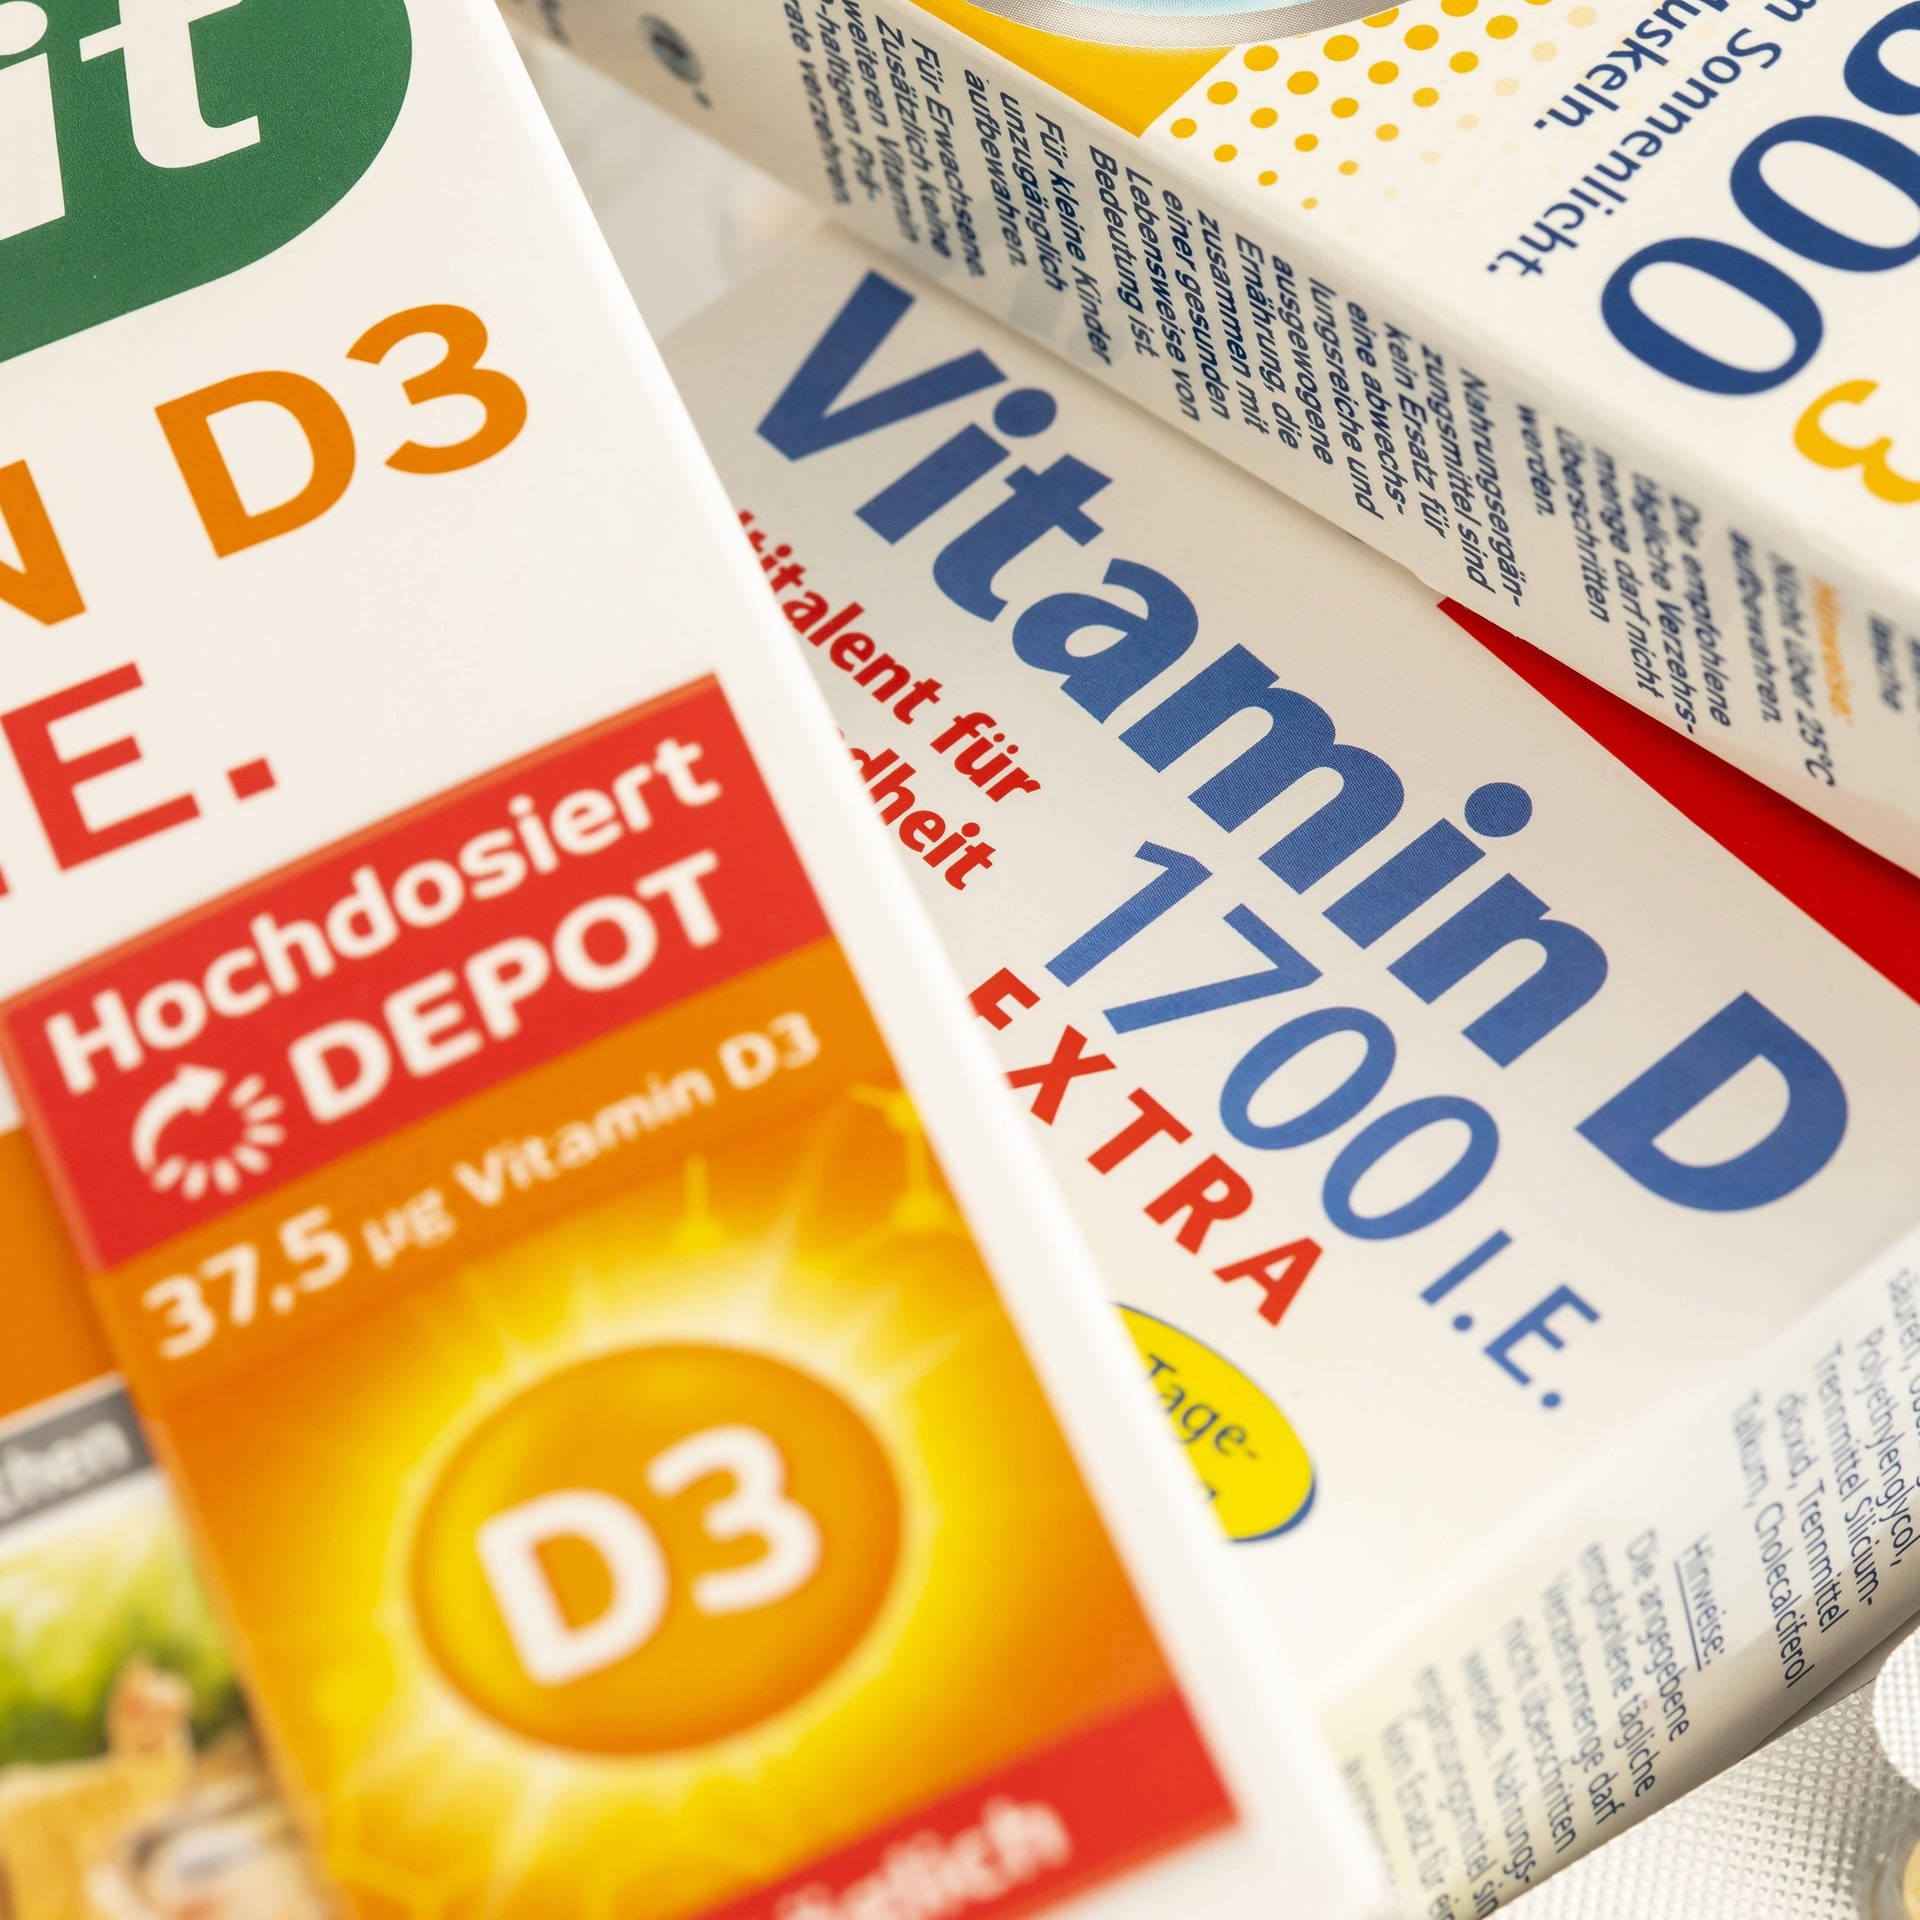 Vitamin-D-Präparate – Wem nützen sie wirklich?